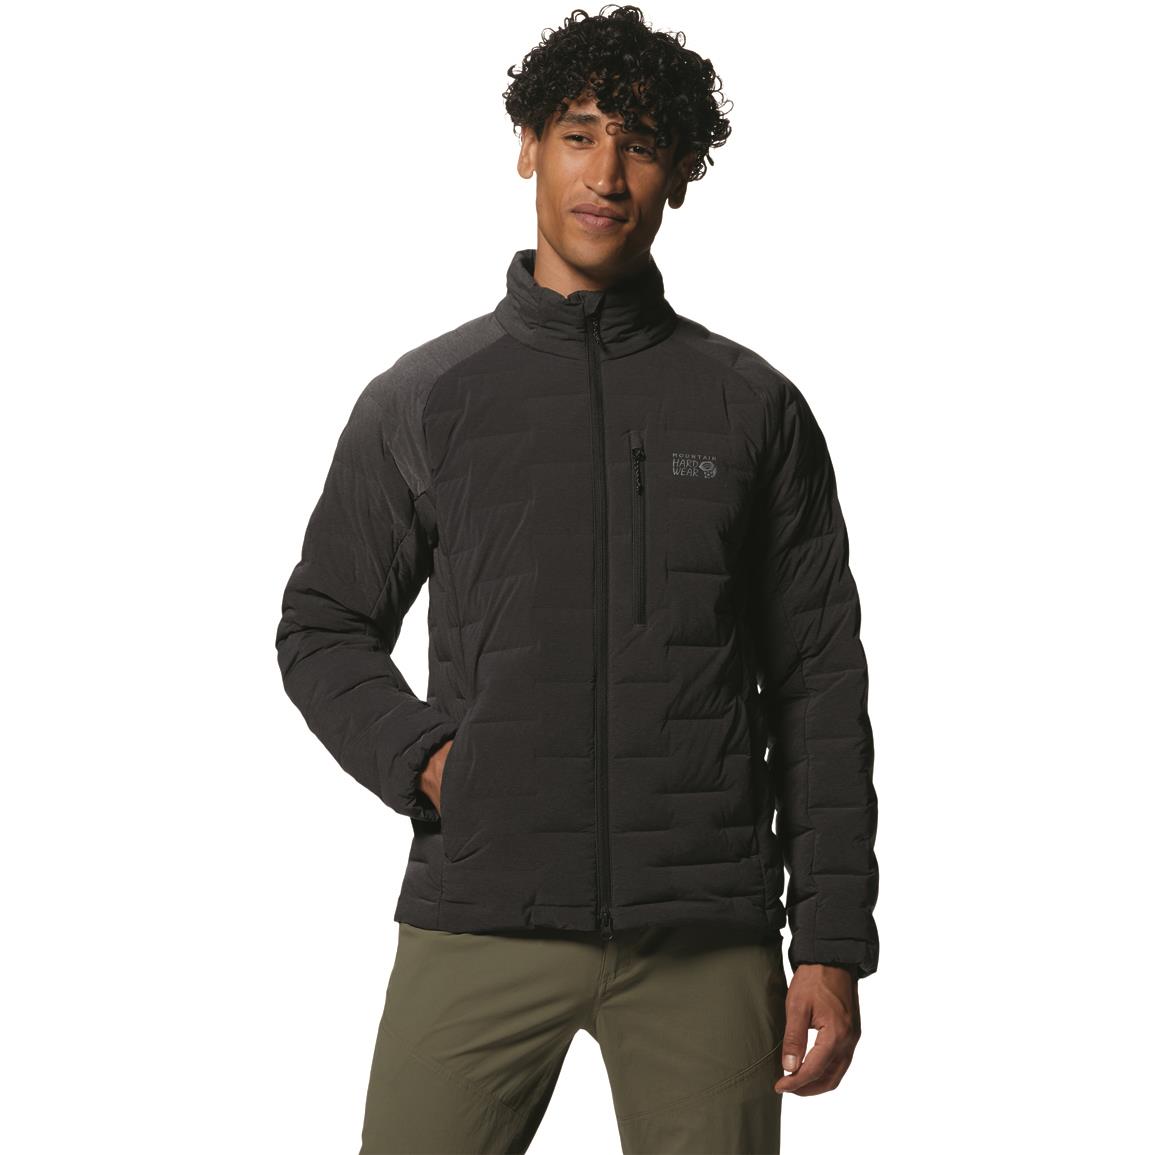 Mountain Hardwear Men's Stretchdown Insulated Jacket, Dark Storm Heather